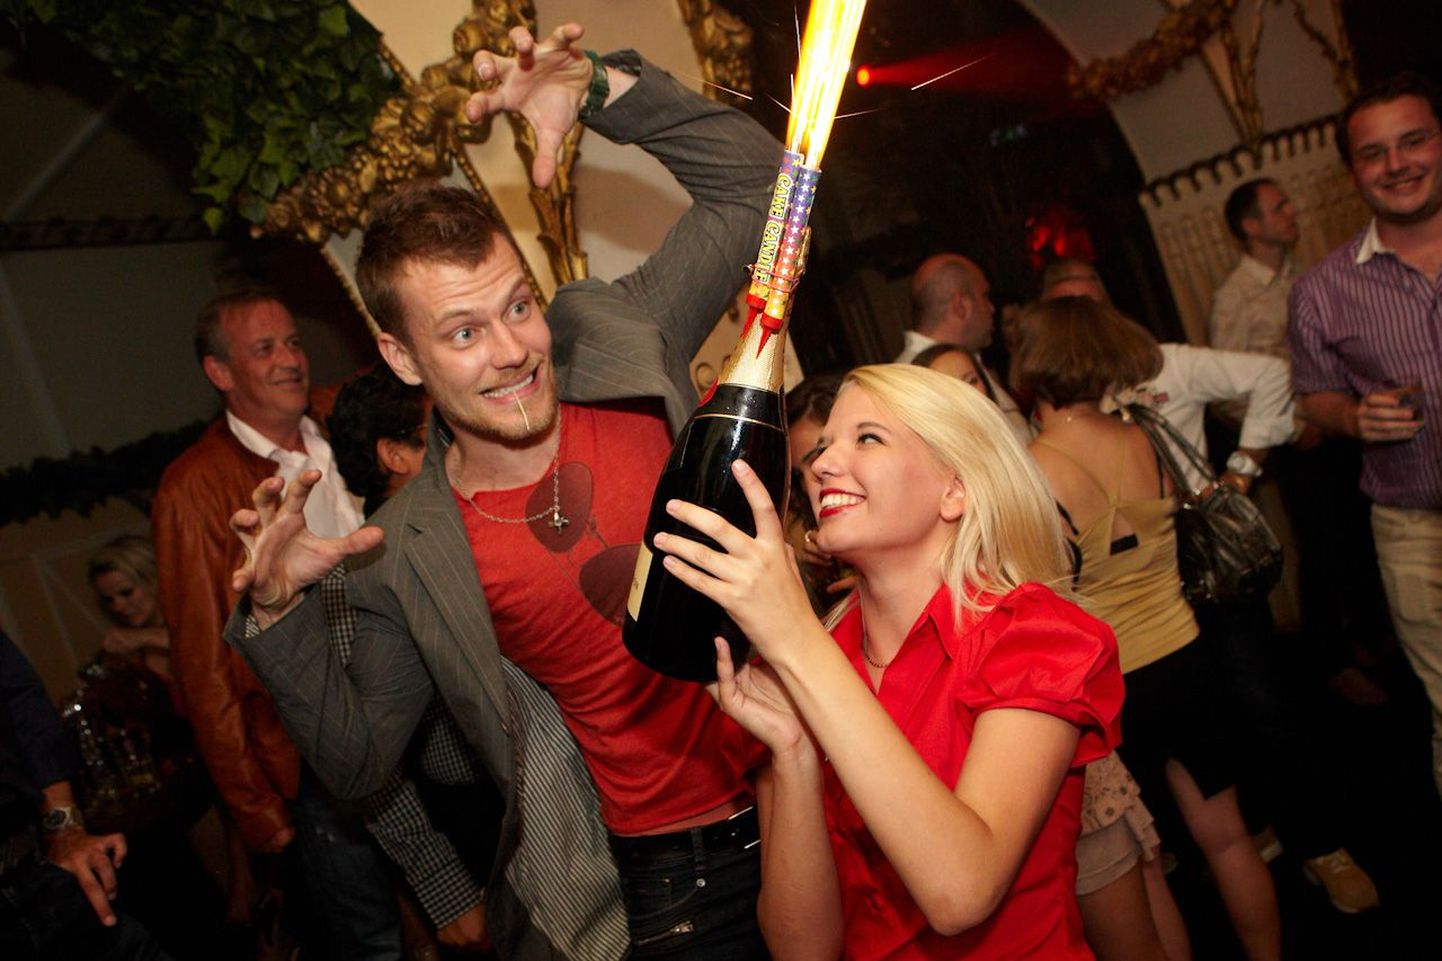 Dom Party RED kostitas külalisi klubis Teater parima meelelahutusega!
Staarkunstnik Martin Saar üritab krabada Unistuste-Roberto laua poole liuglevat šampanjat